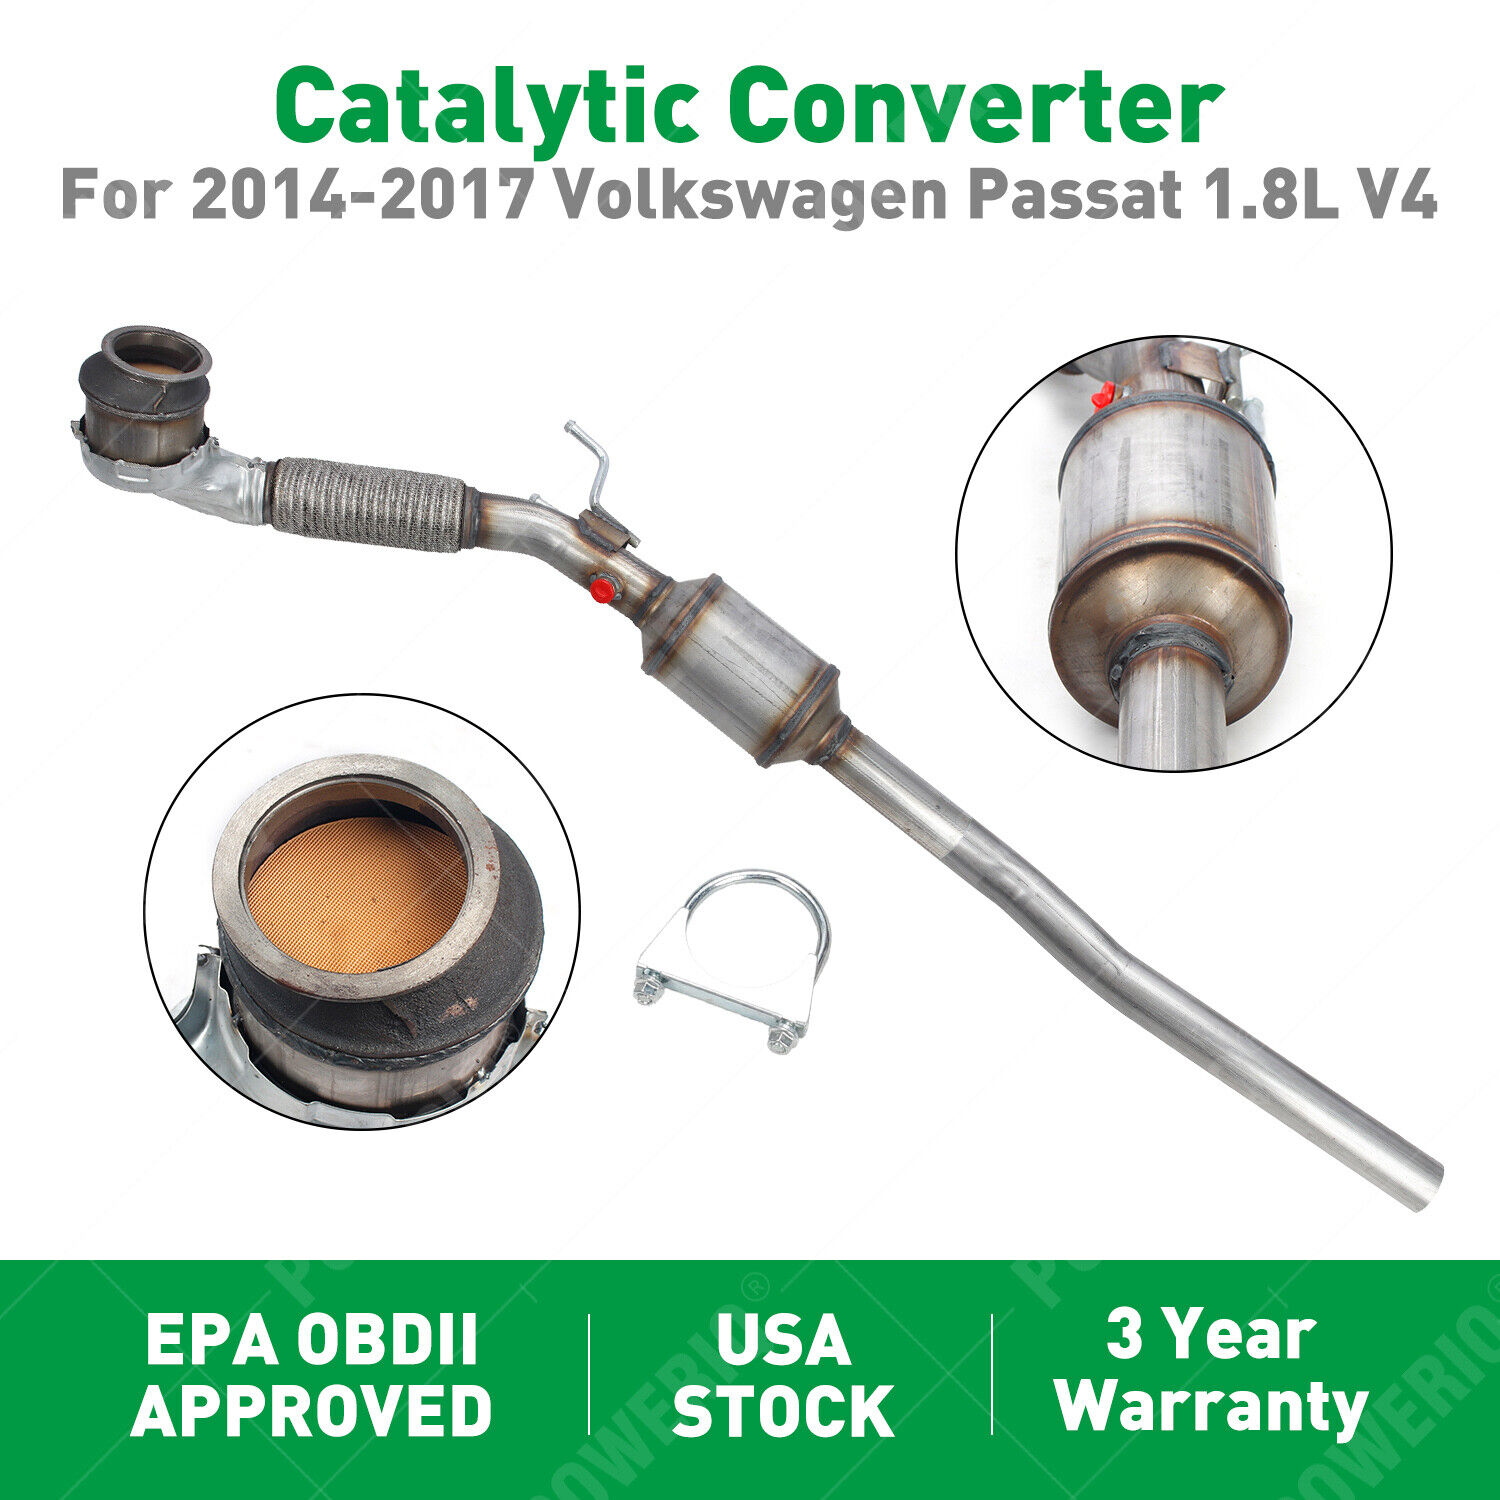 Catalytic Converter For 2014 2015 2016 2017 Volkswagen Passat 1.8L V4 EPA OBDII